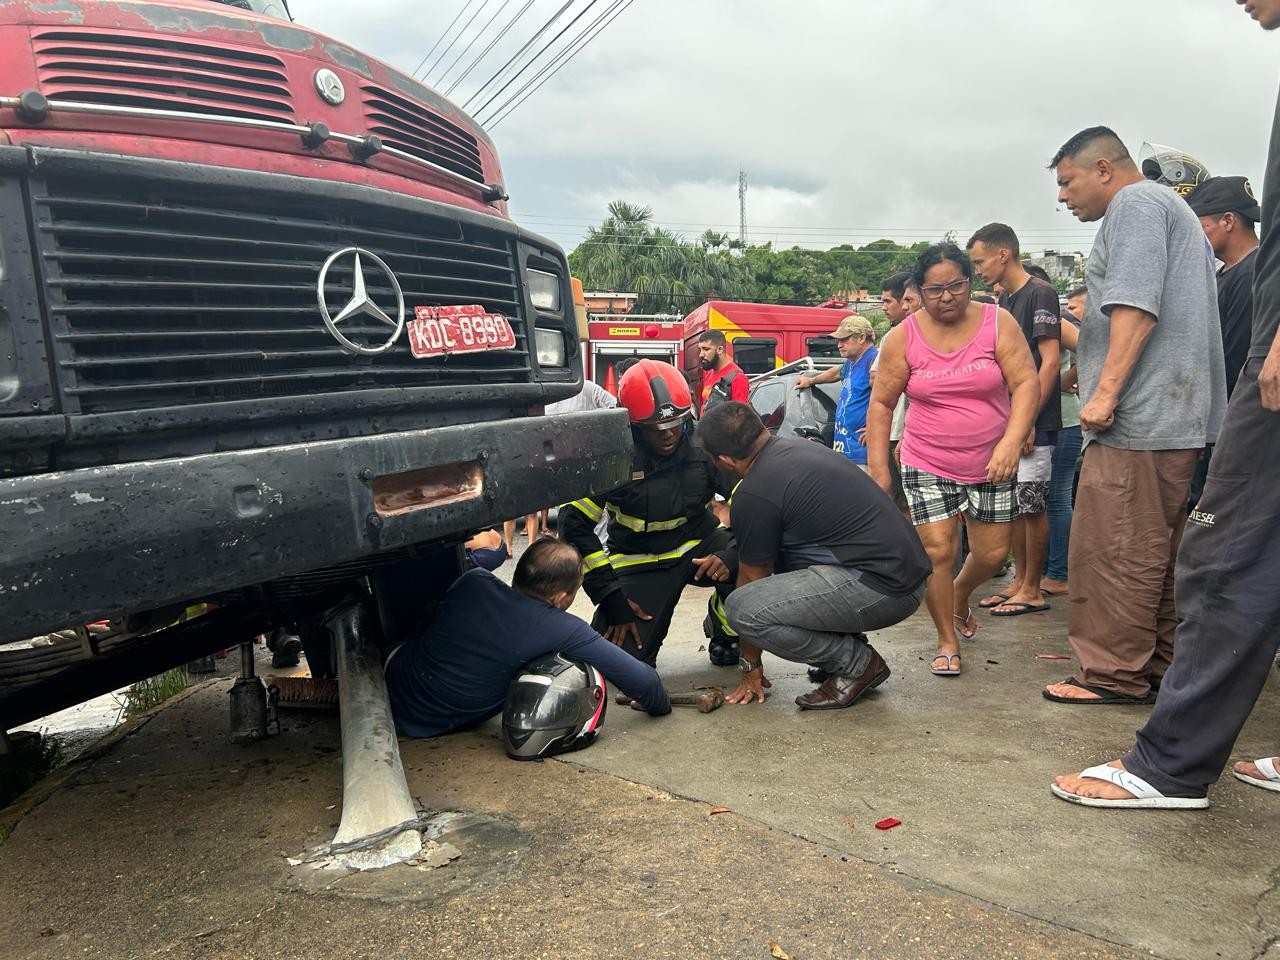 Morre motorista que ficou preso embaixo da roda de caminhão na Avenida das Torres, em Manaus